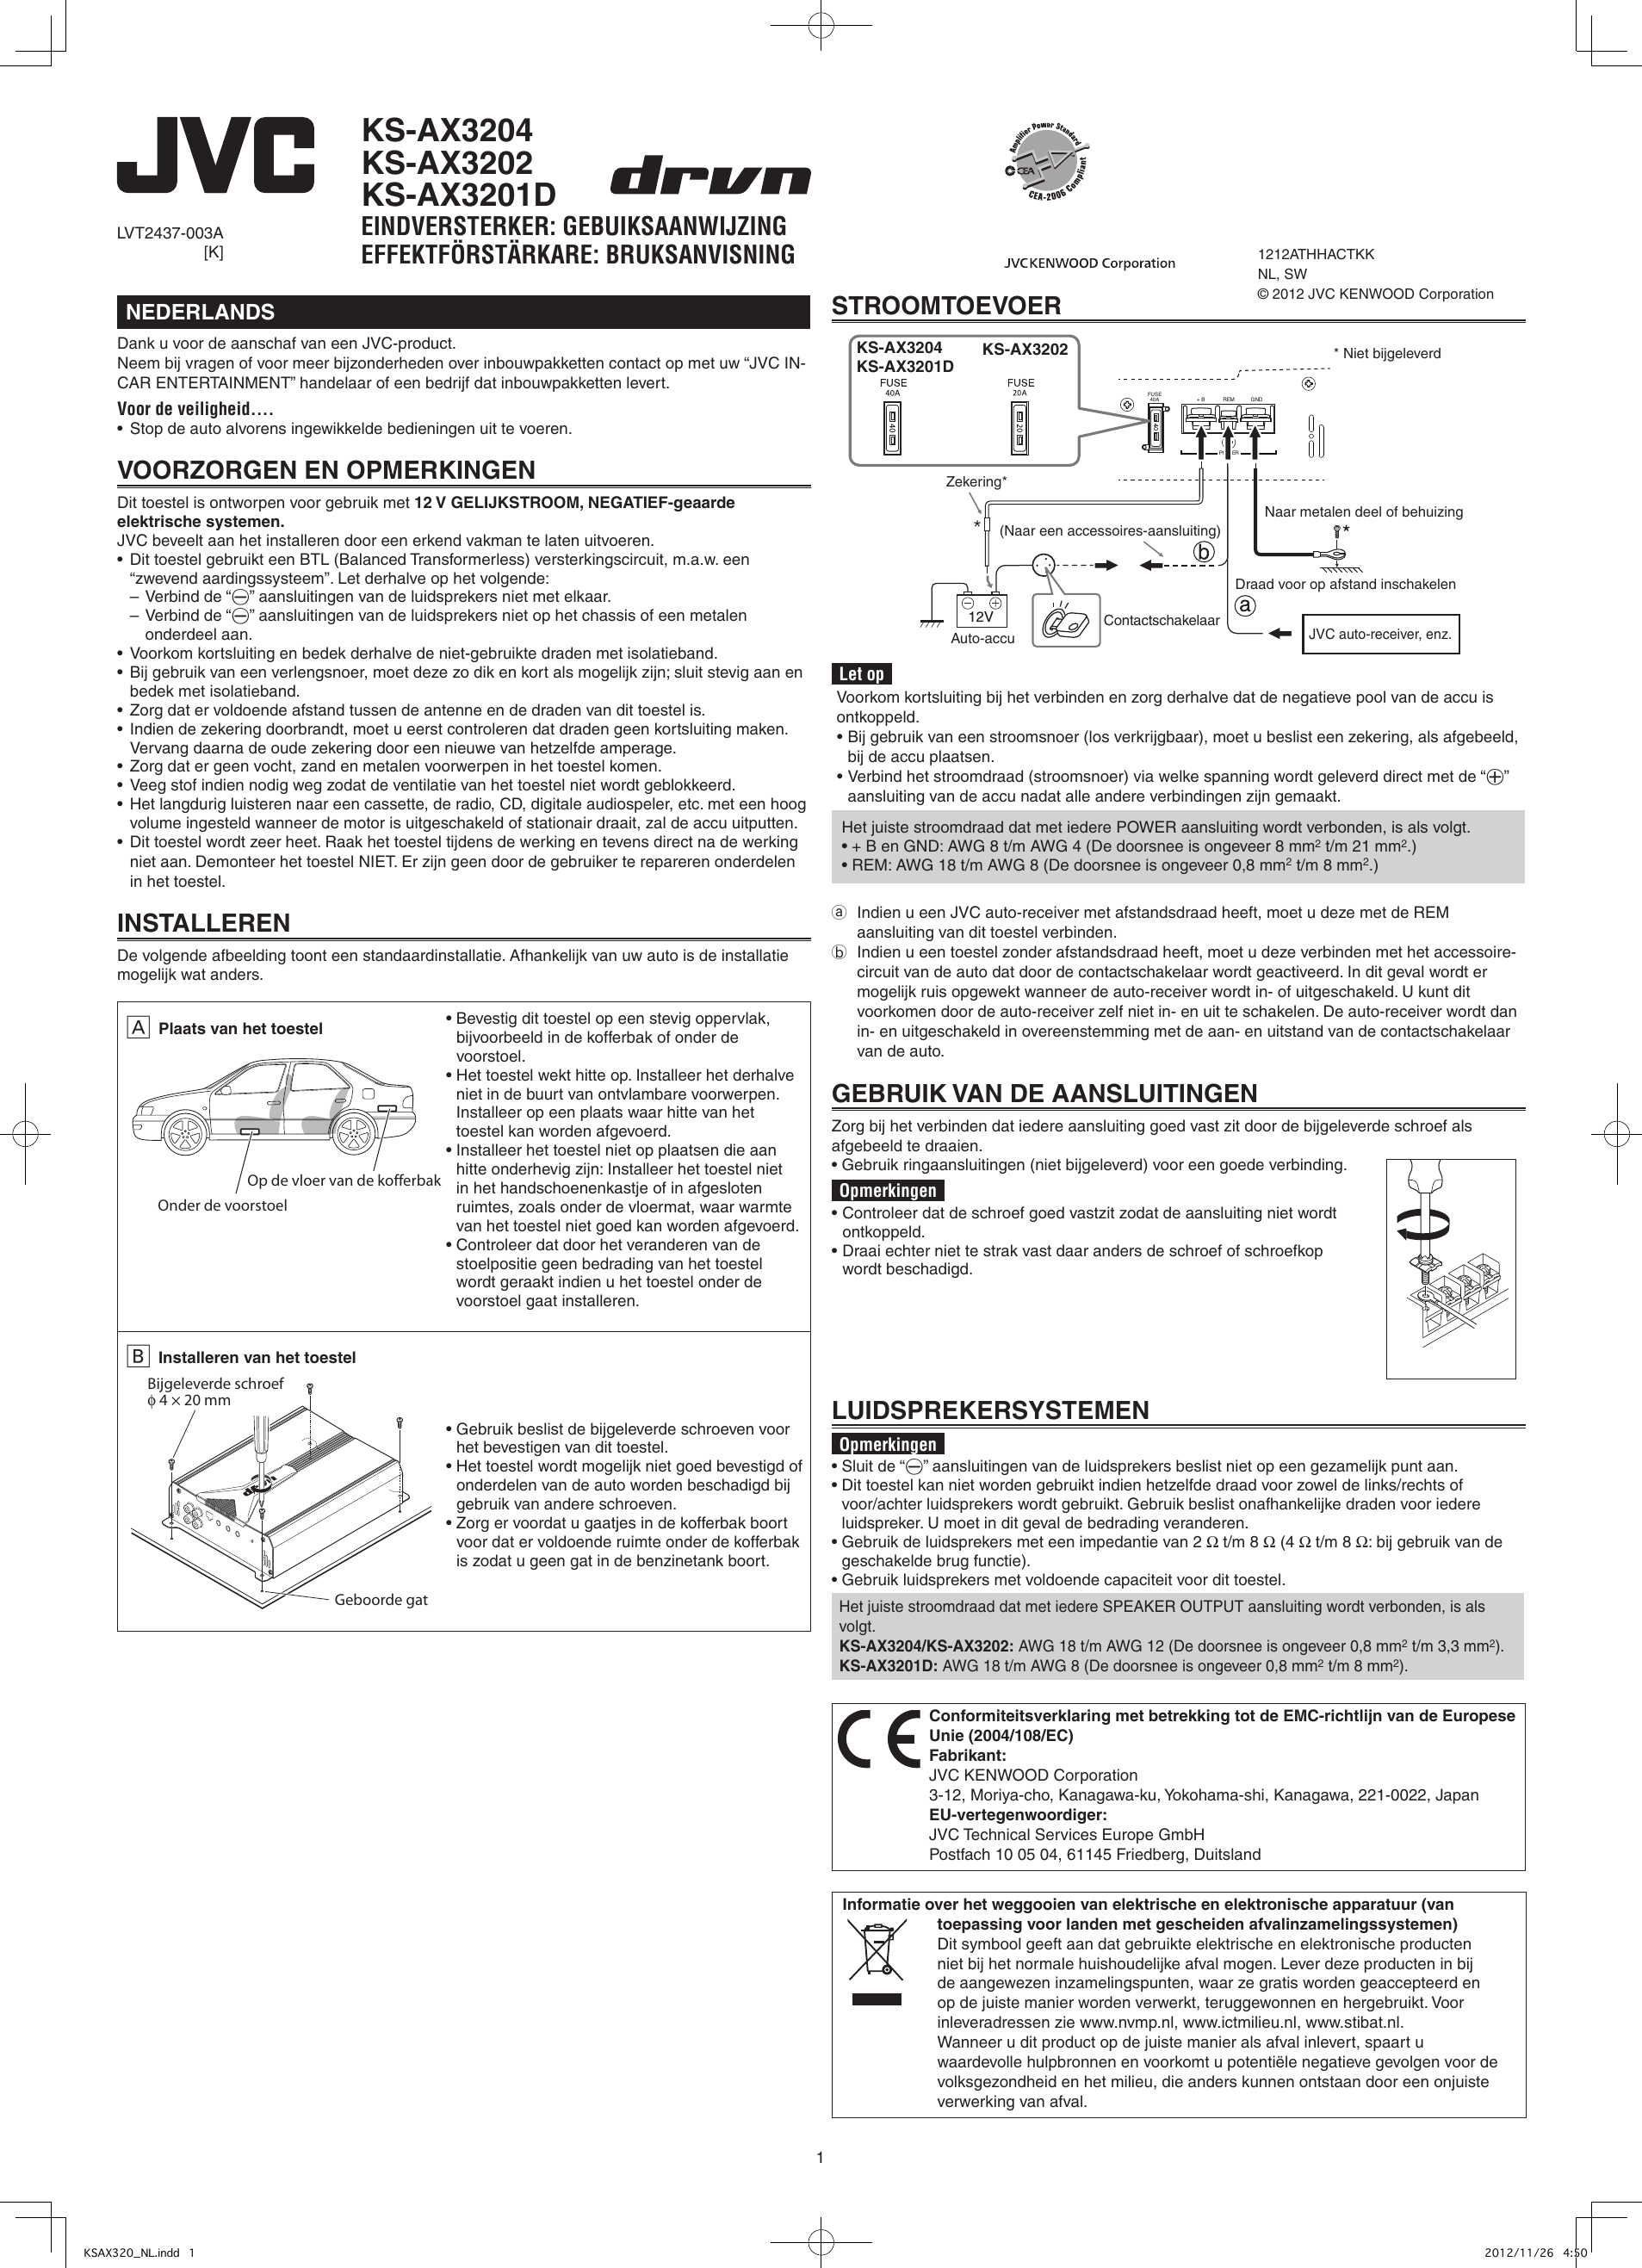 Page 1 of 6 - JVC KS-AX3201DK User Manual KS-AX3201DK, KS-AX3202K, KS-AX3204K LVT2437-003A